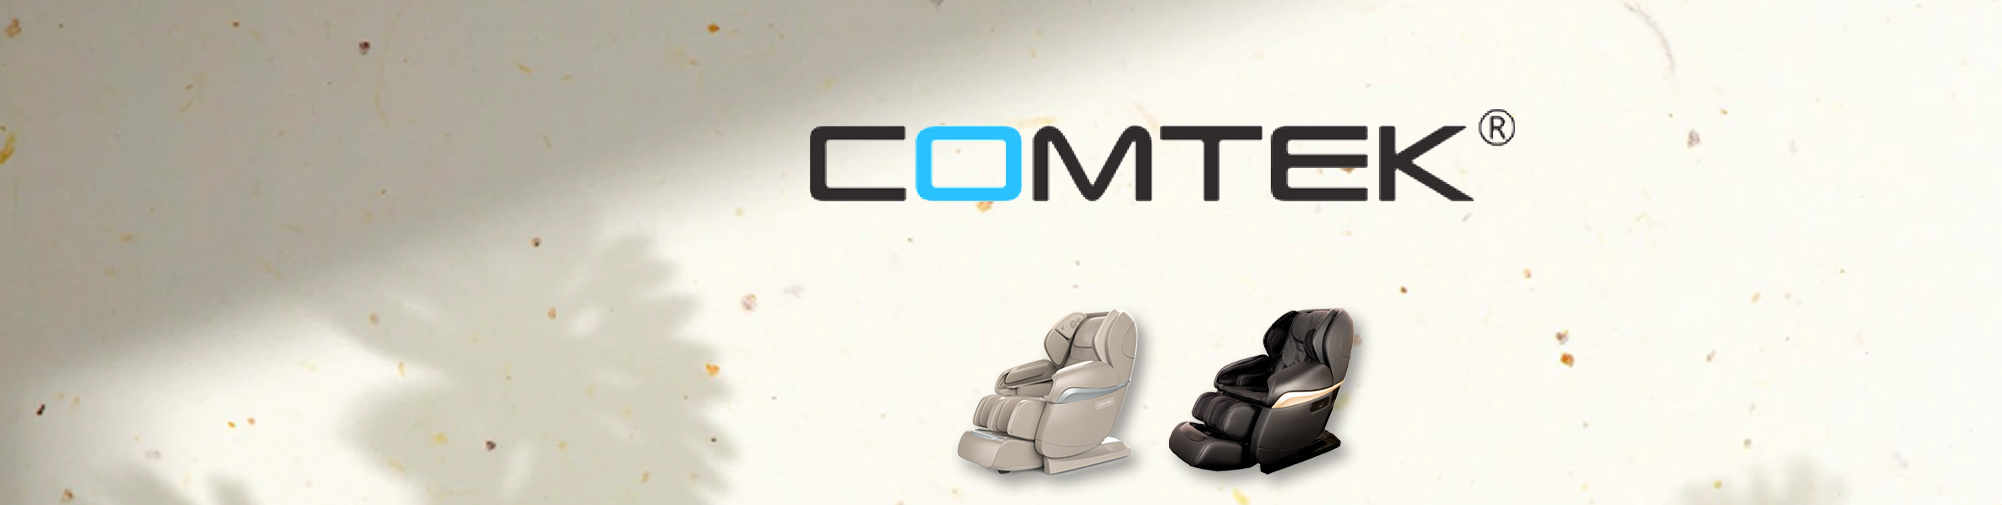 COMTEK - produttore professionale originale | Mondo delle poltrone da massaggio